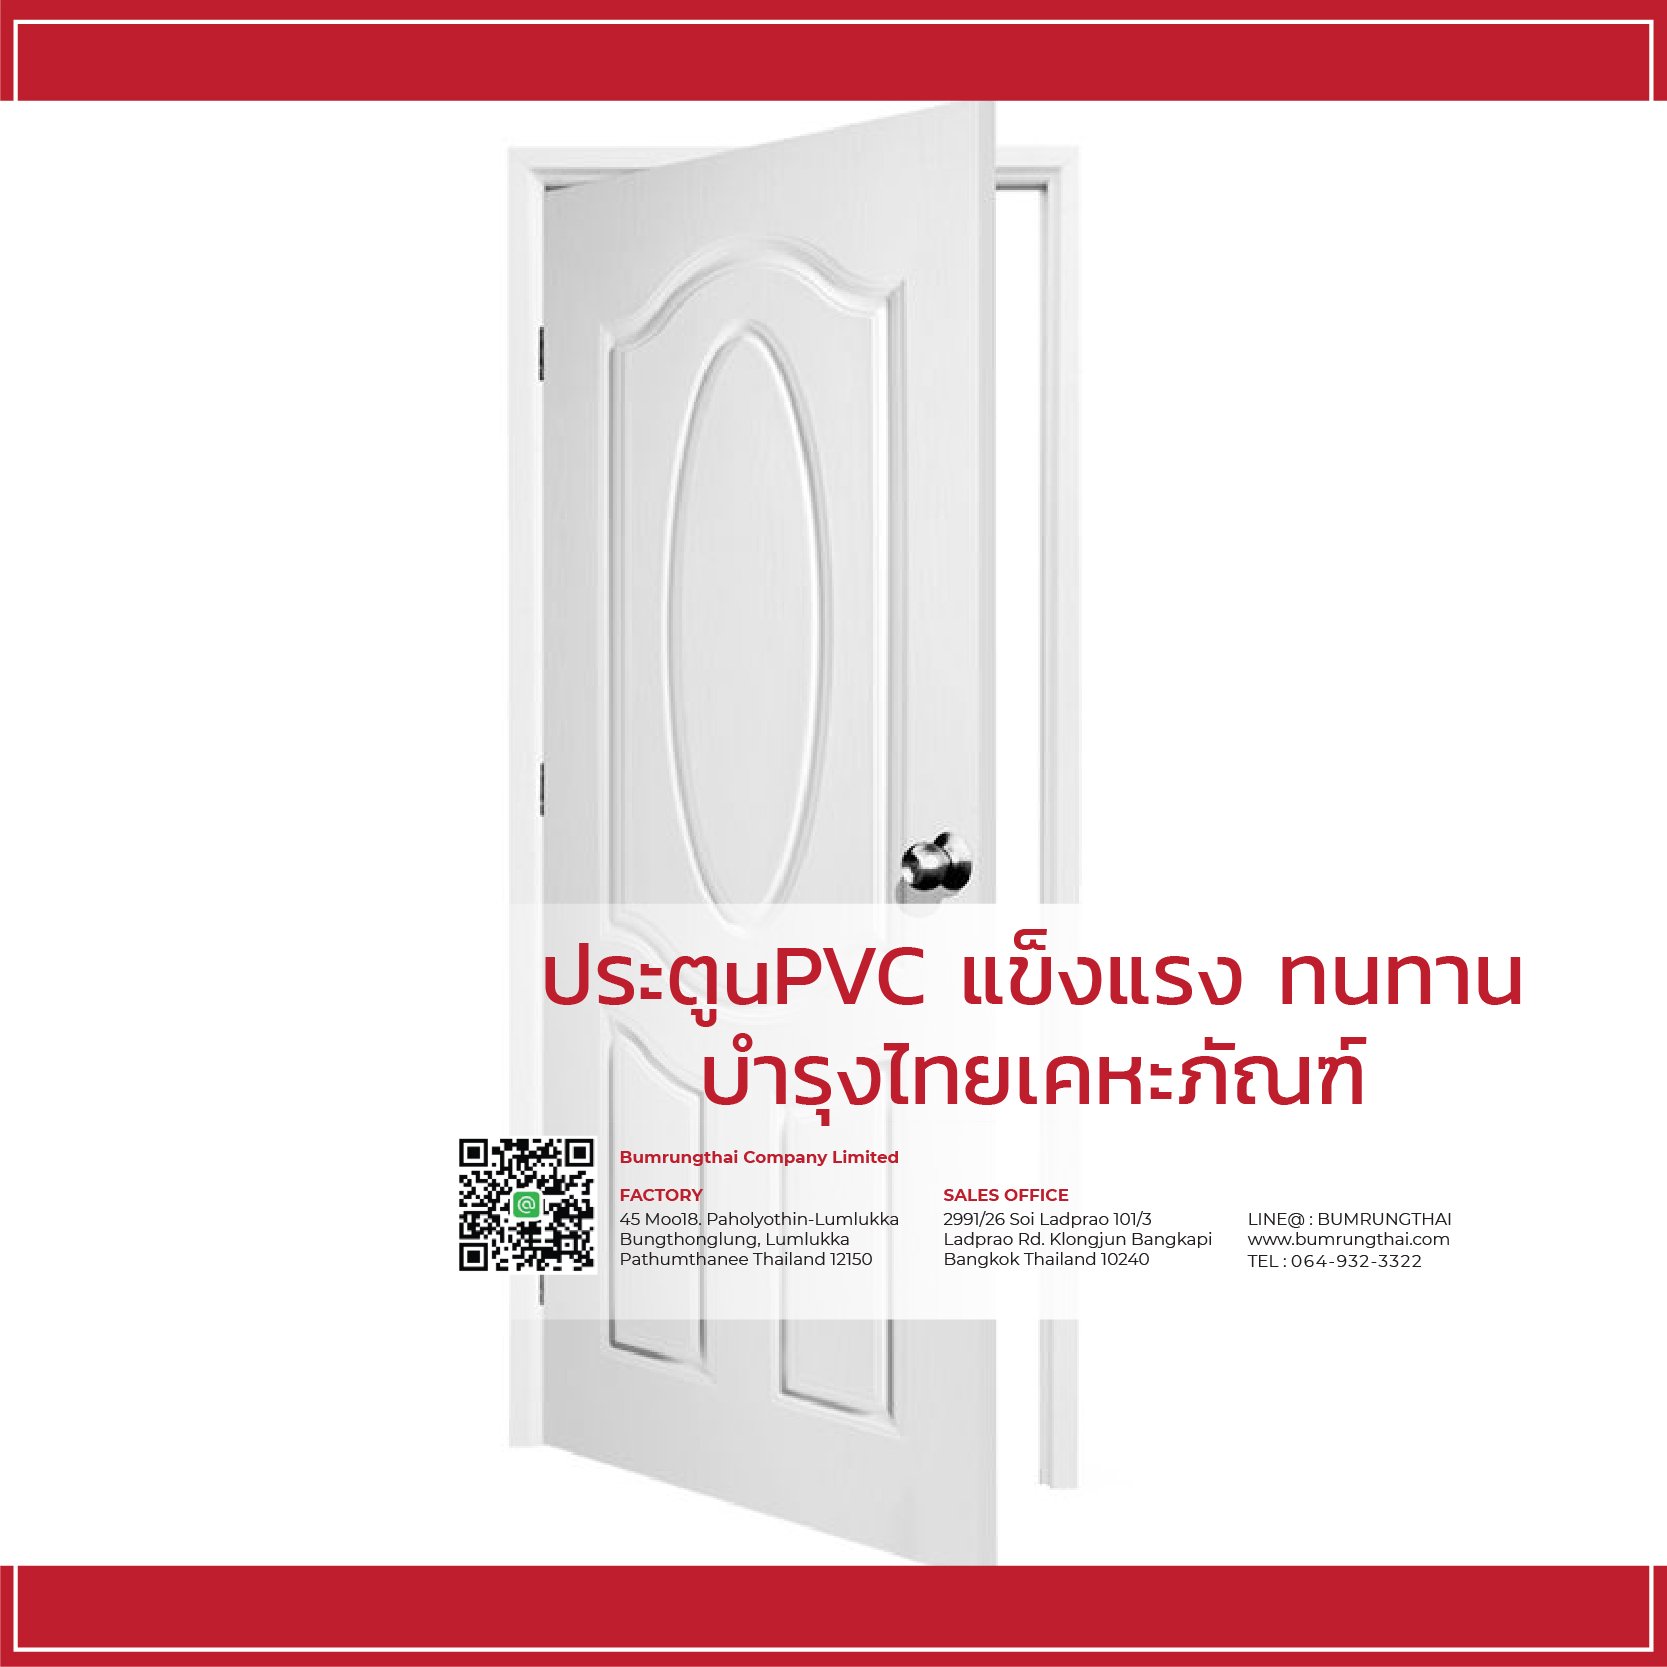 ประตูuPVC แข็งแรง ทนทาน - บำรุงไทยเคหะภัณฑ์